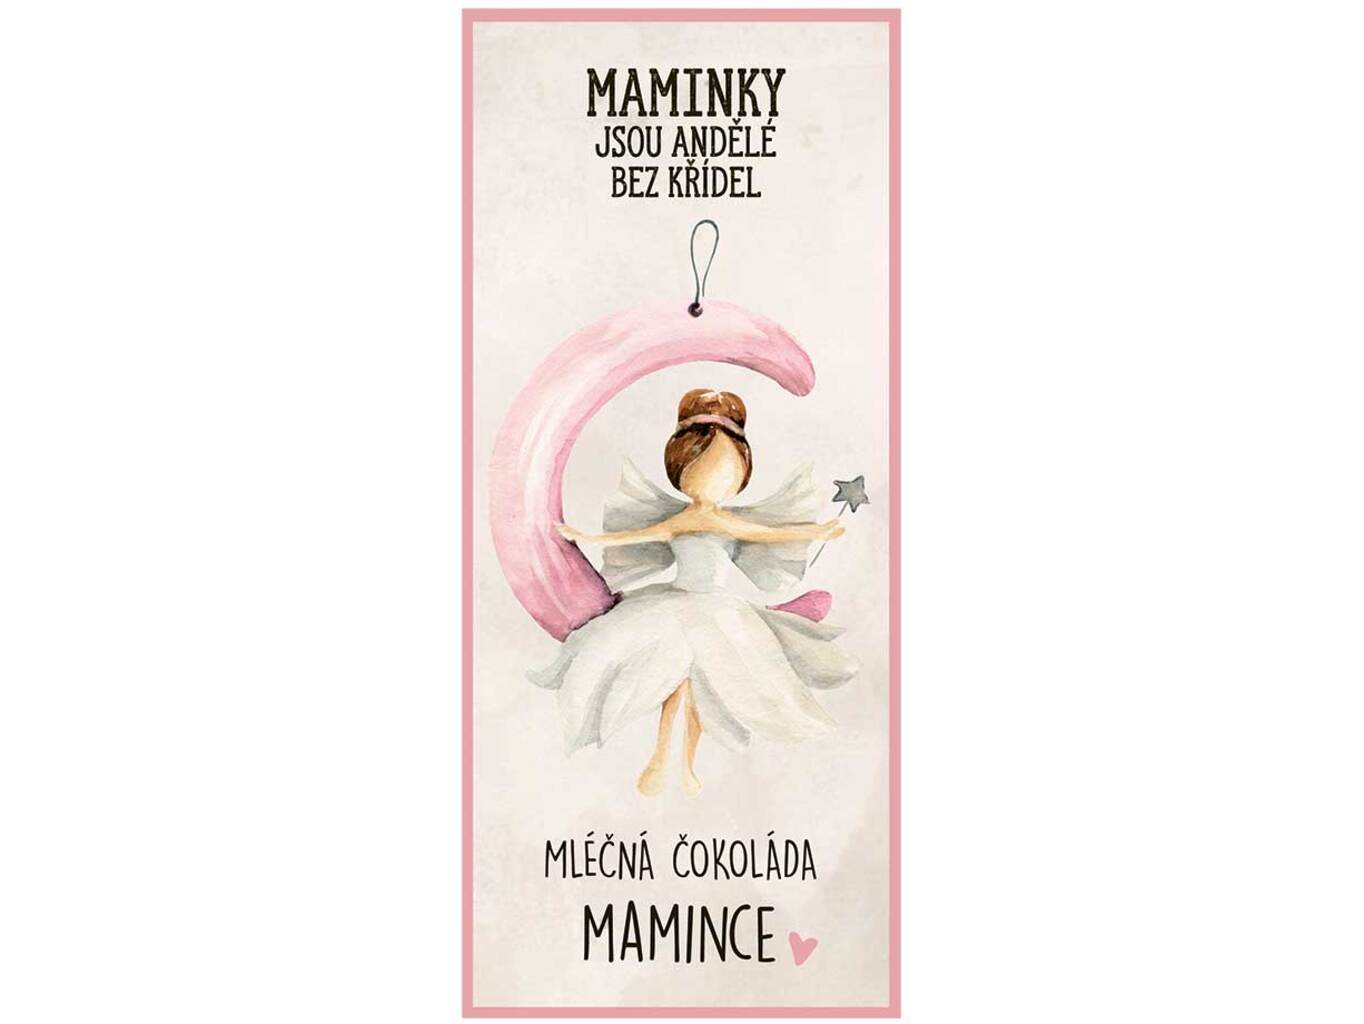 Bohemia Gifts Dárková mléčná čokoláda 100 g – Maminky jsou andělé bez křídel